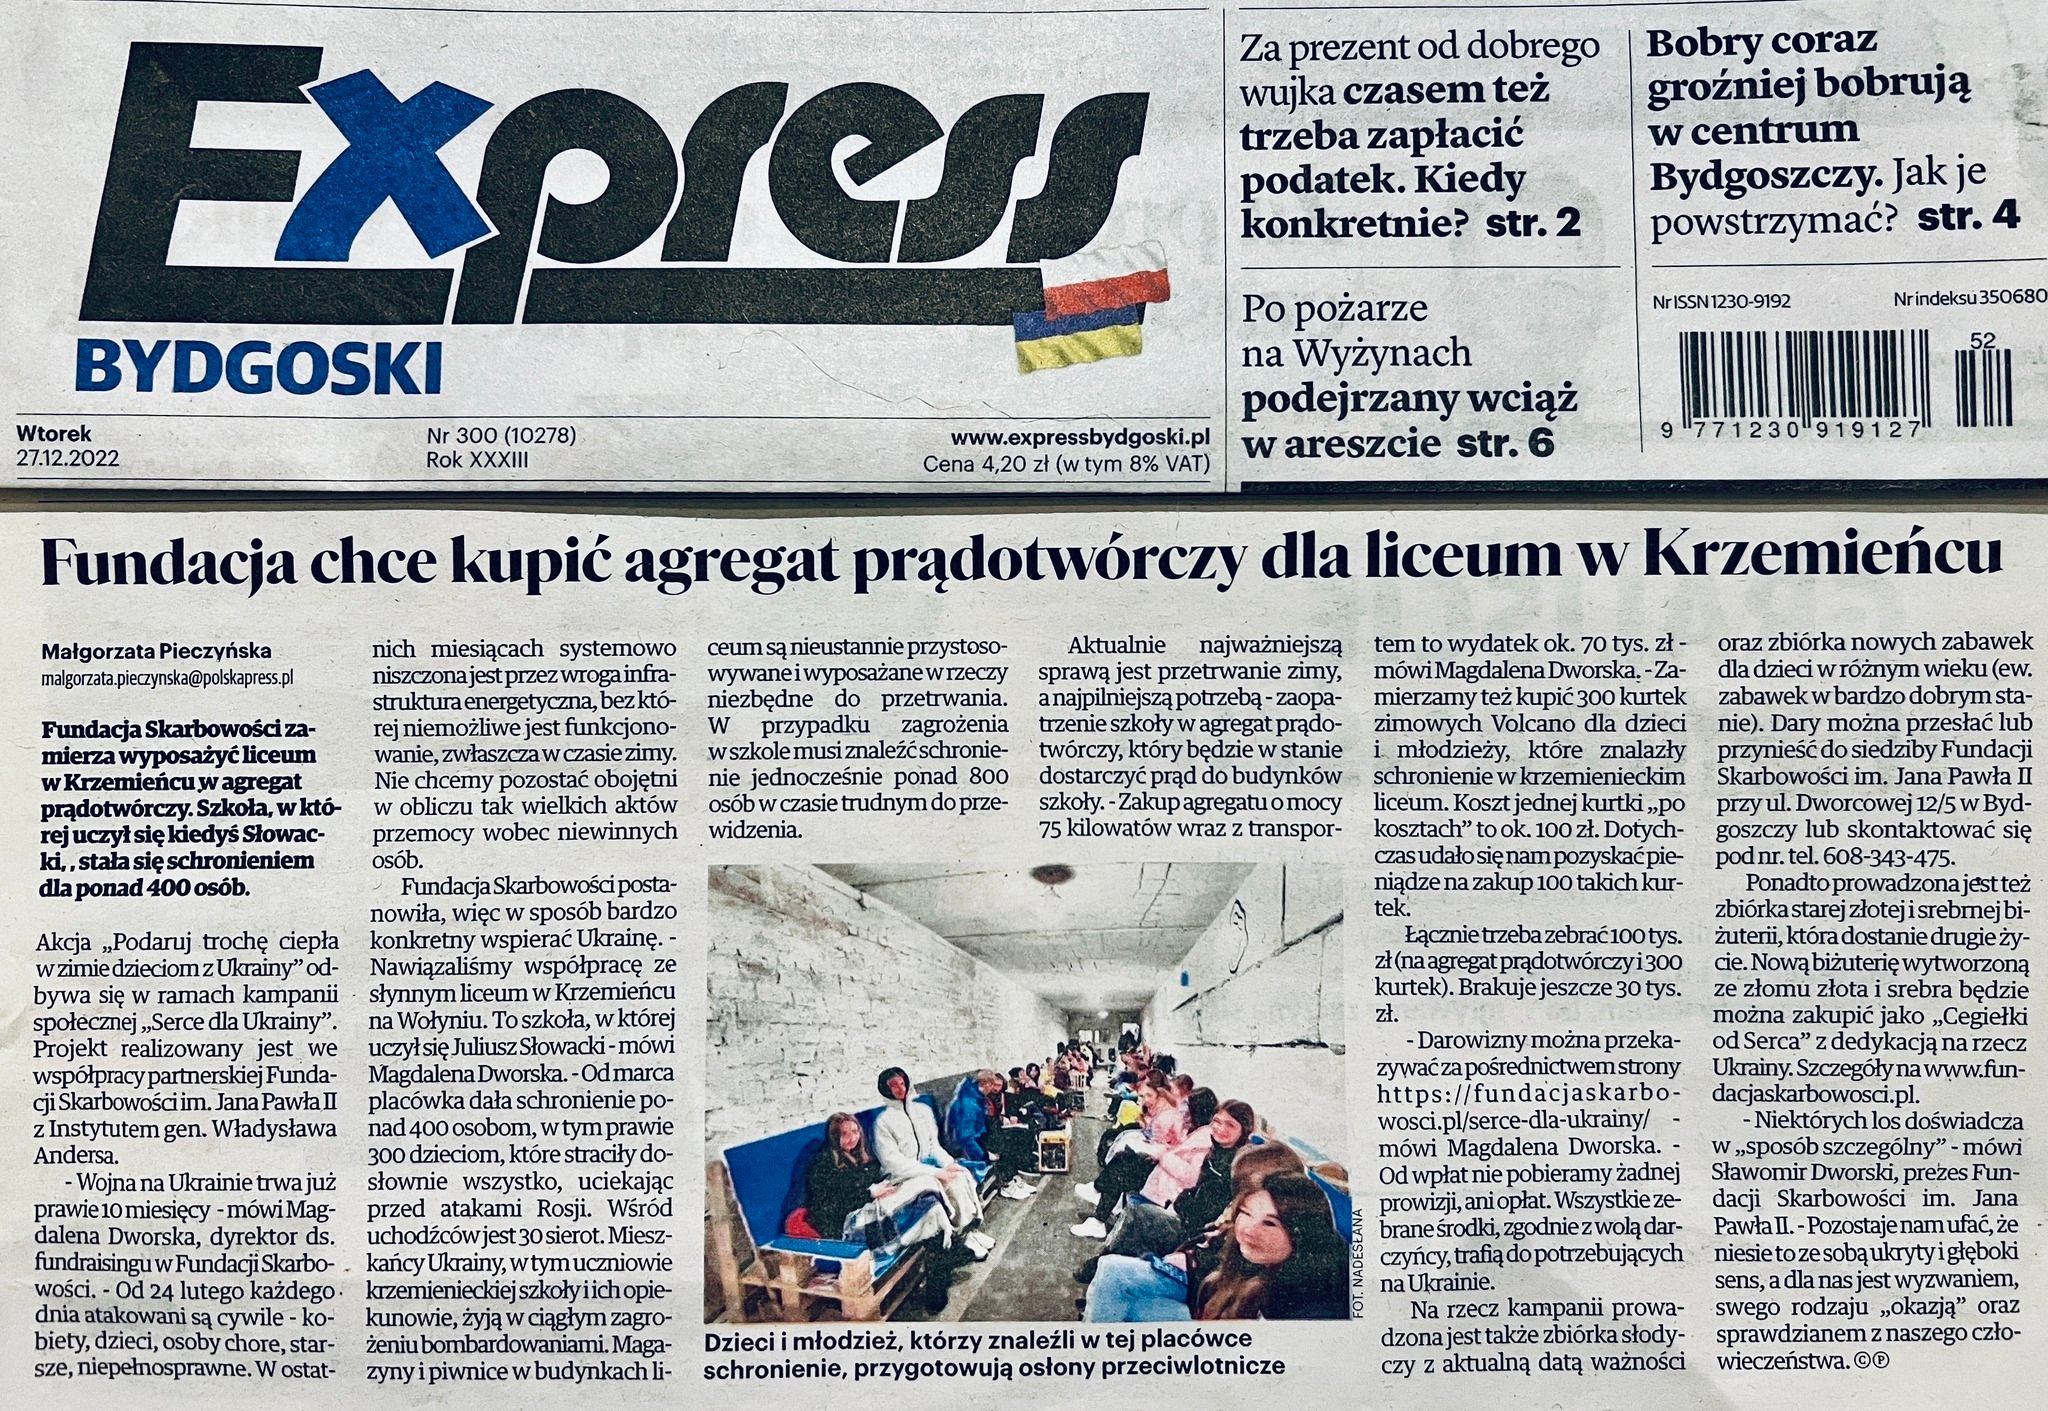 Express bydgoski o akcji Fundacji Skarbowości - Agregat prądotwórczy dla Liceum w Krzemieńcu od Skarbowców!